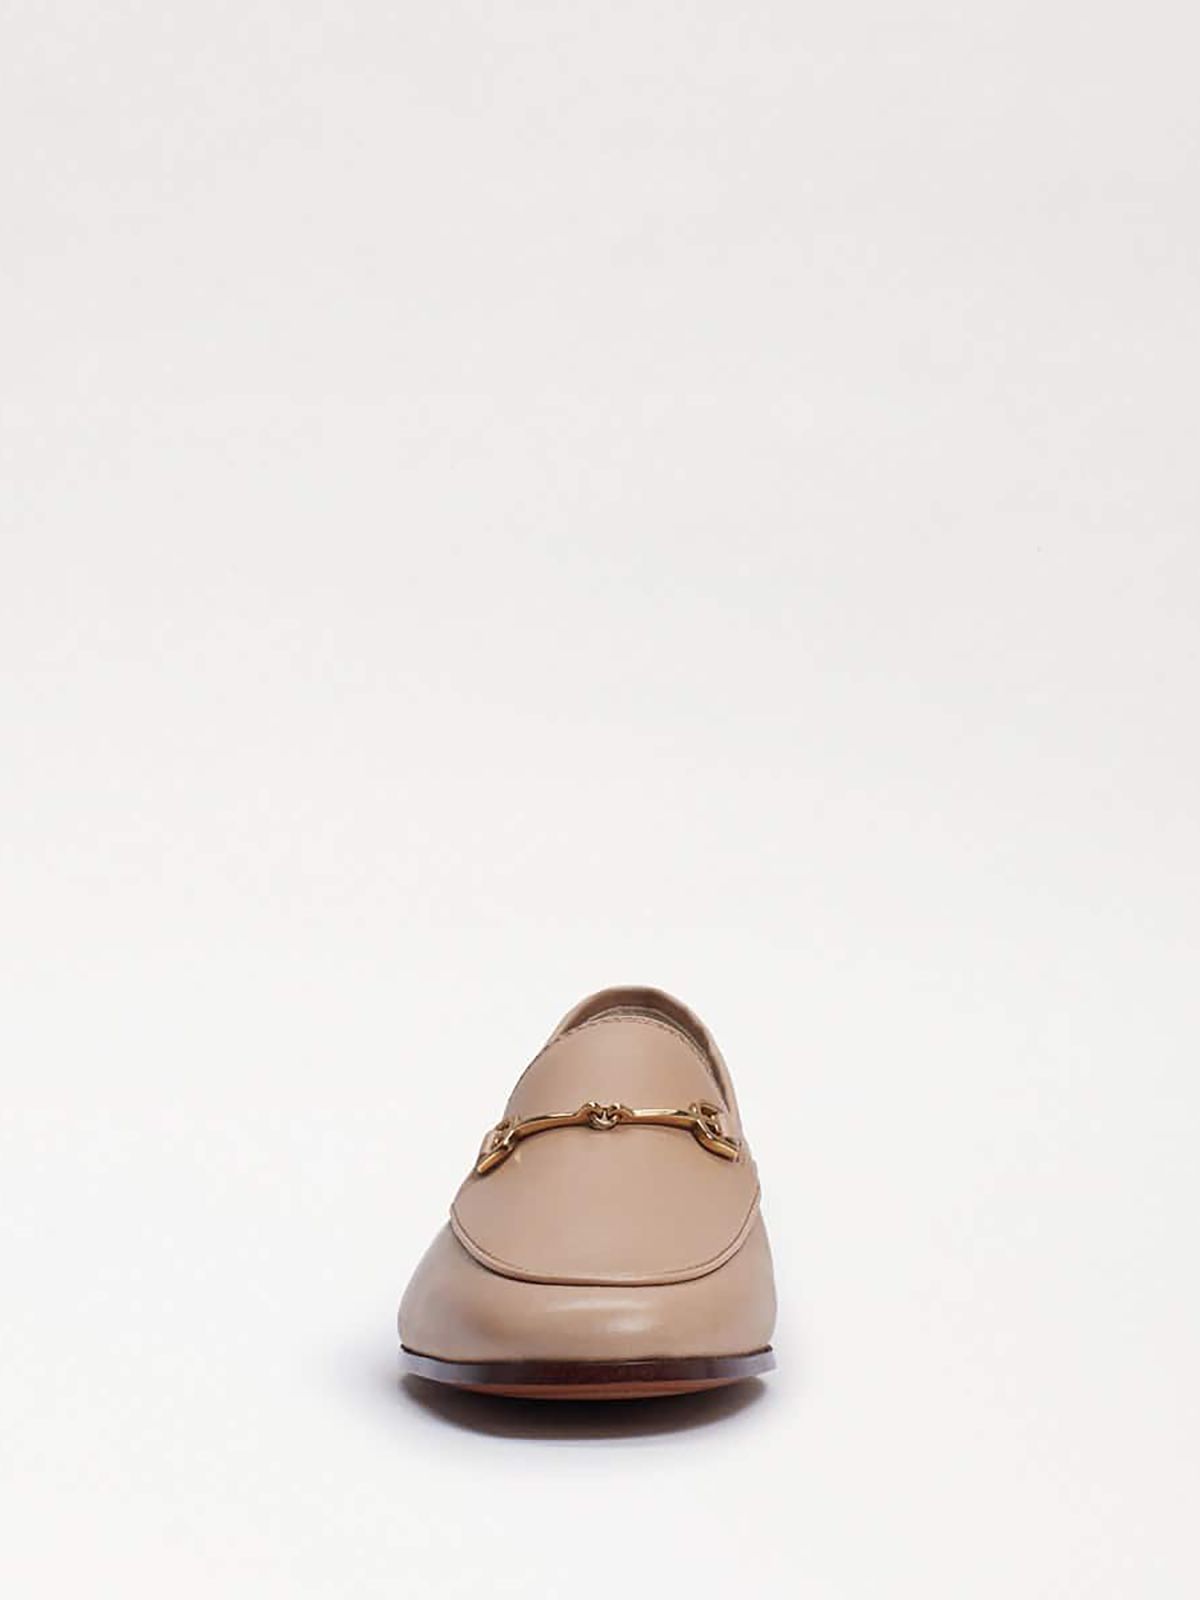  נעלי עור בסגנון מוקסין / נשים של SAM EDELMAN